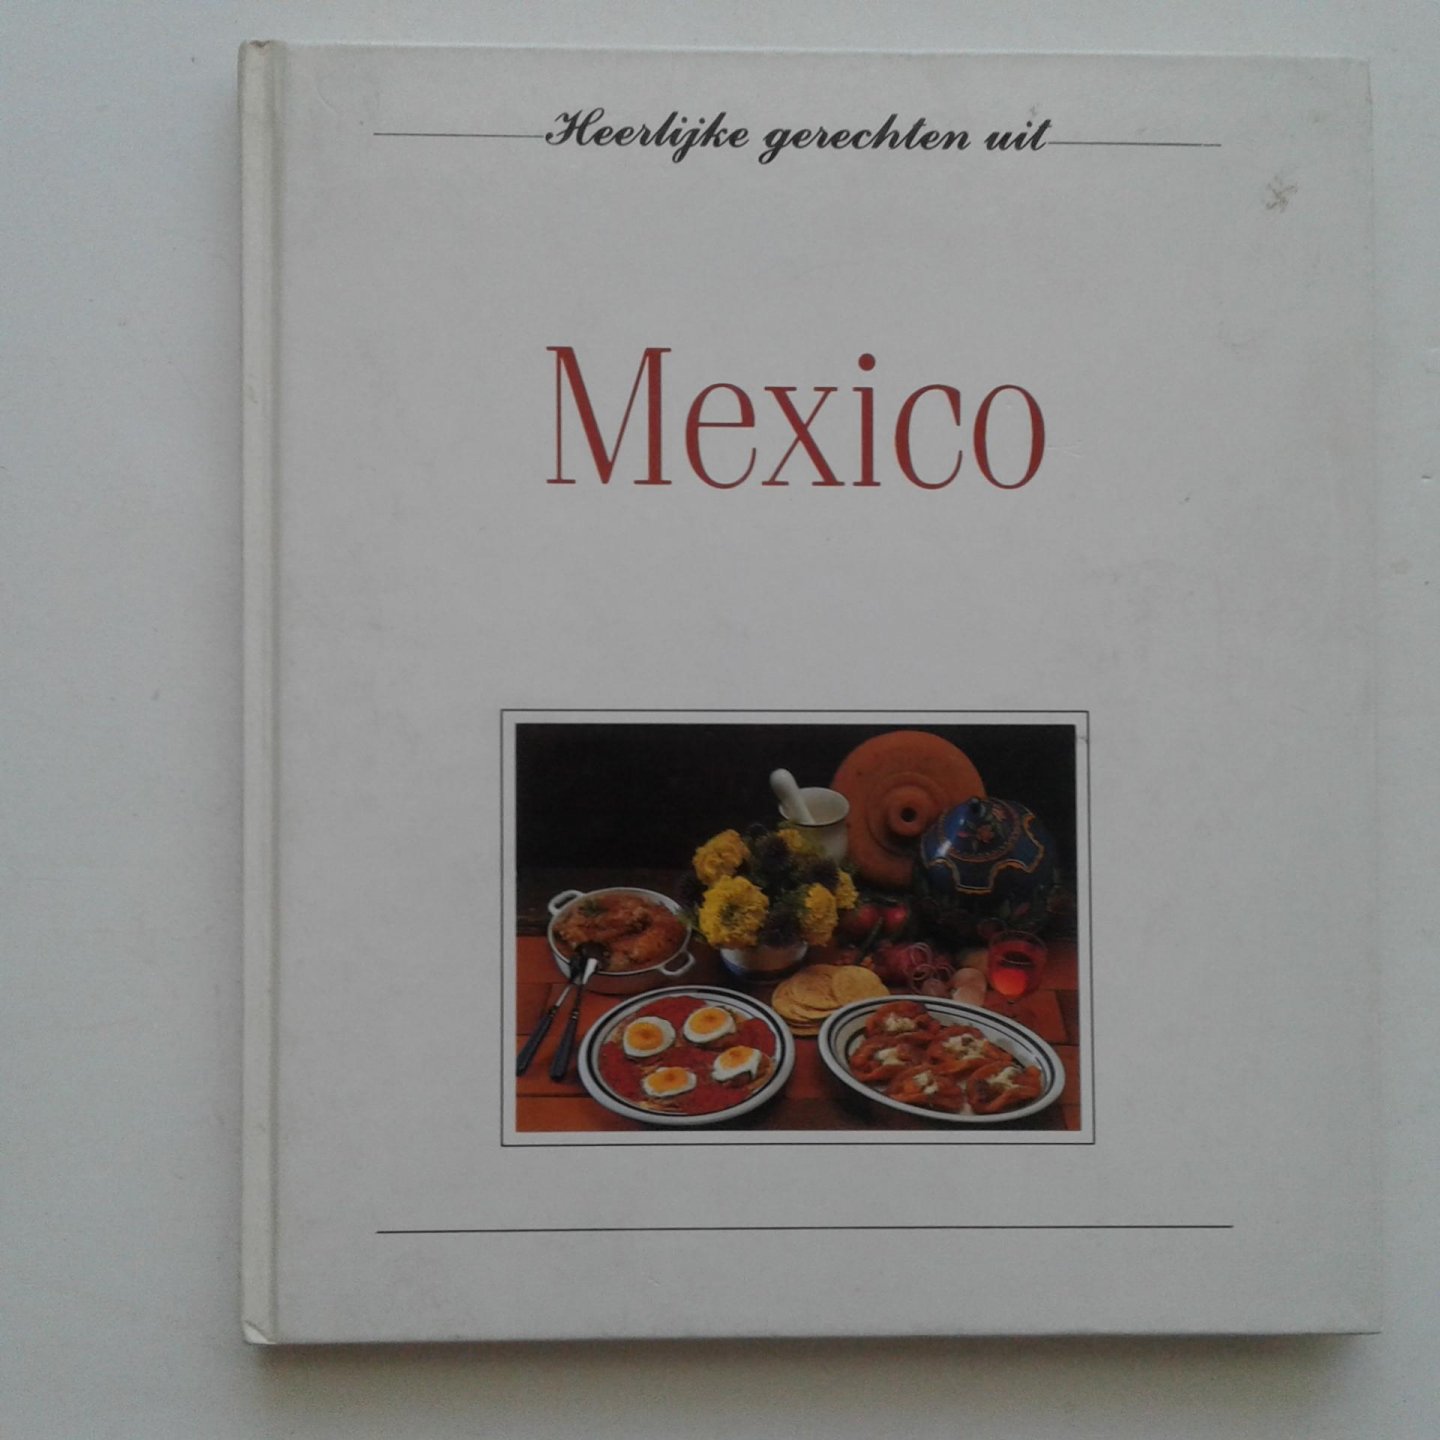  - Heerlijke gerechten uit Mexico